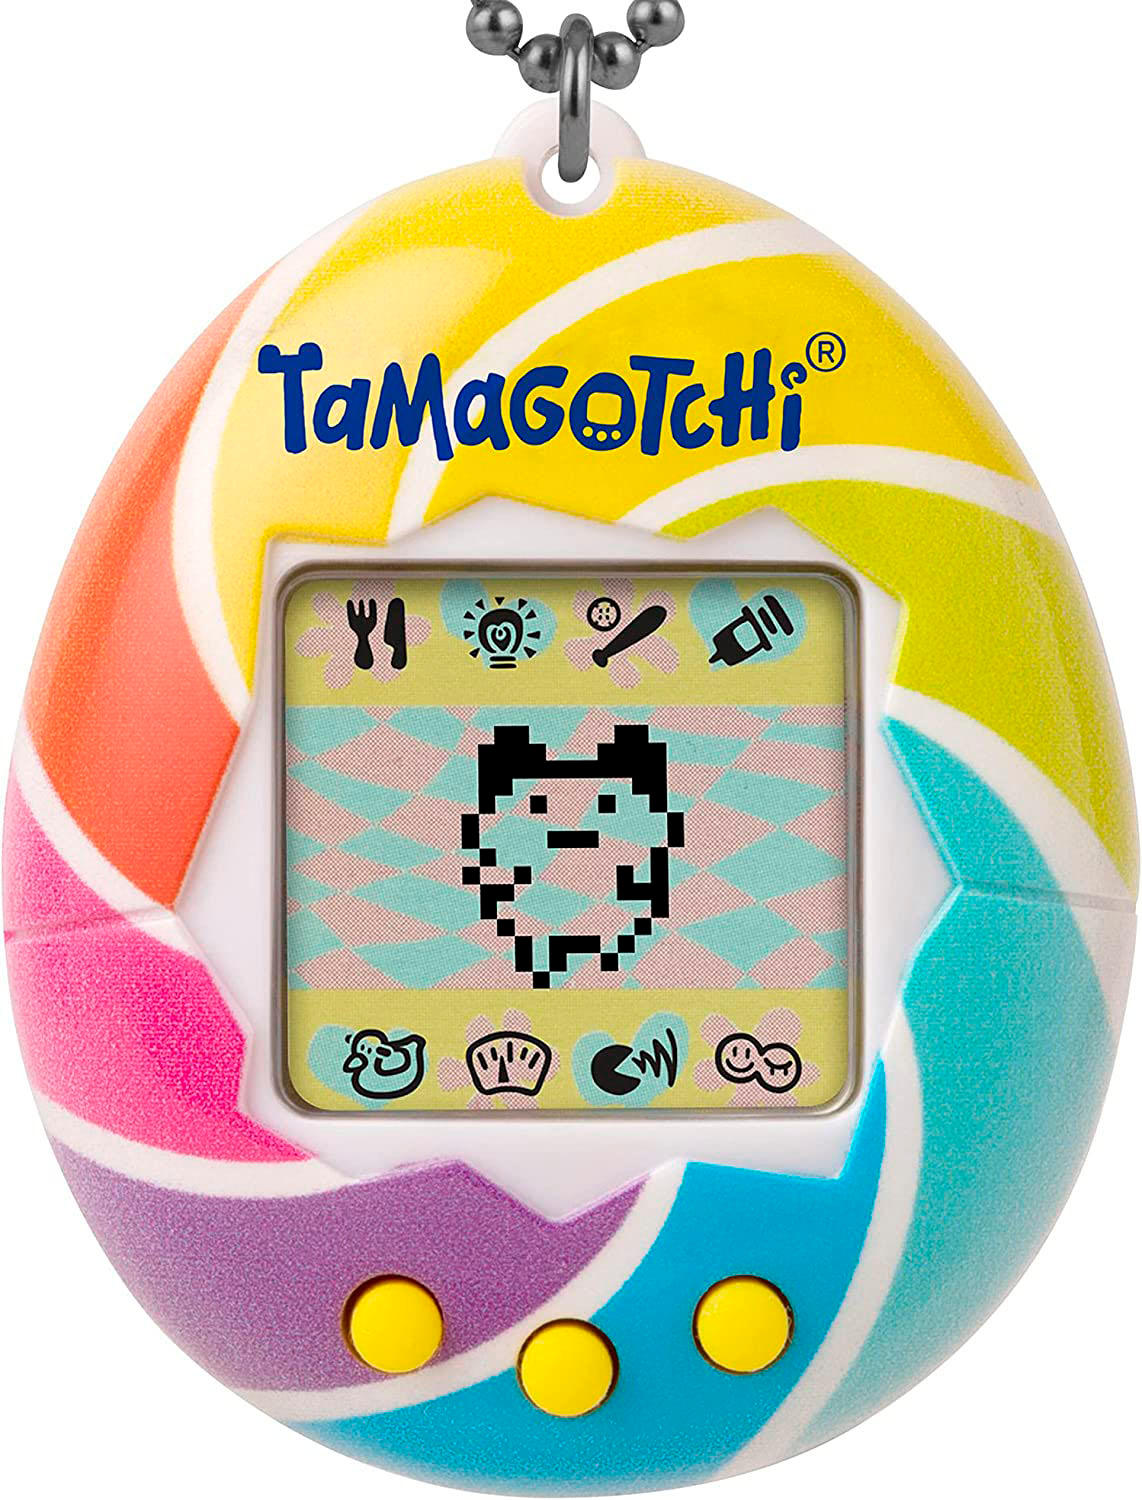 Tamagotchi Pix – Tamagotchi Pix